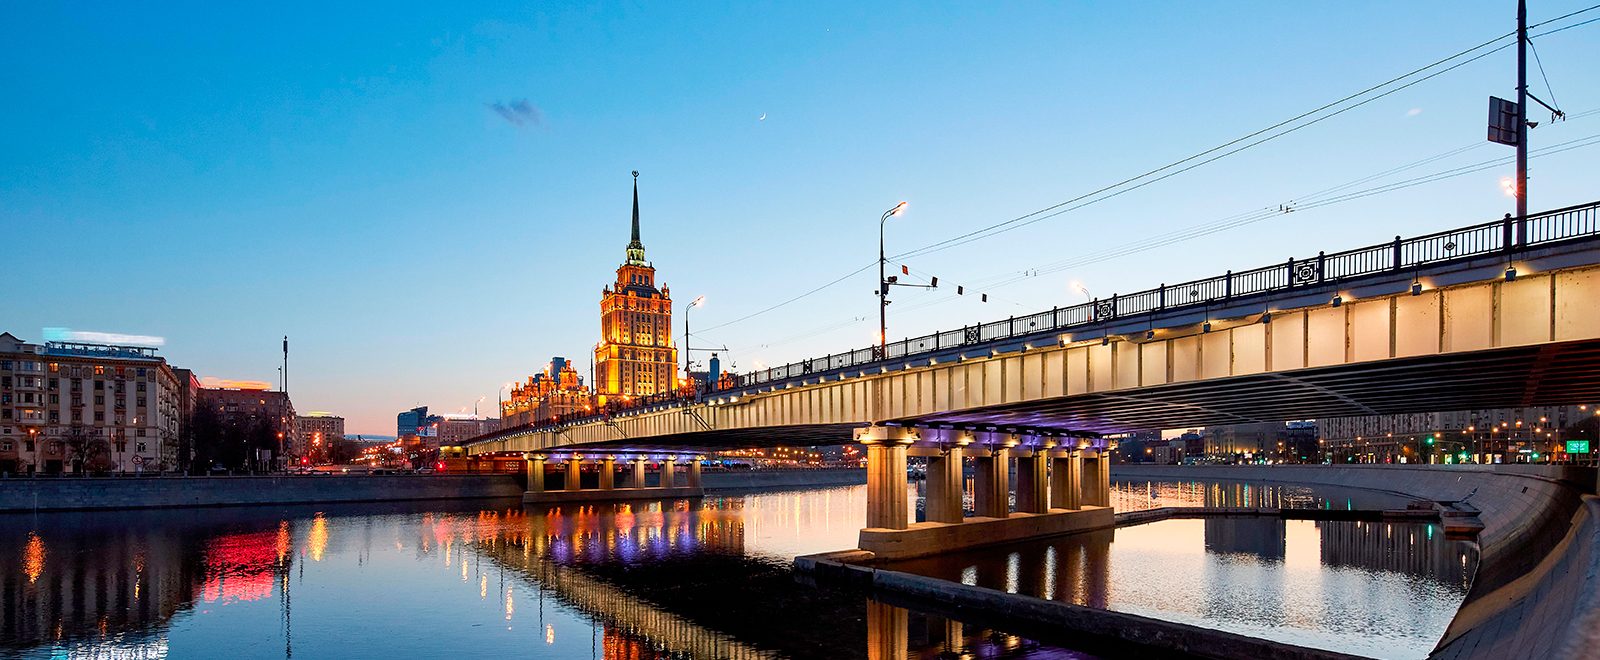 Он является четвертым в списке самых протяженных навесных конструкций столицы. Фото: сайт мэра Москвы